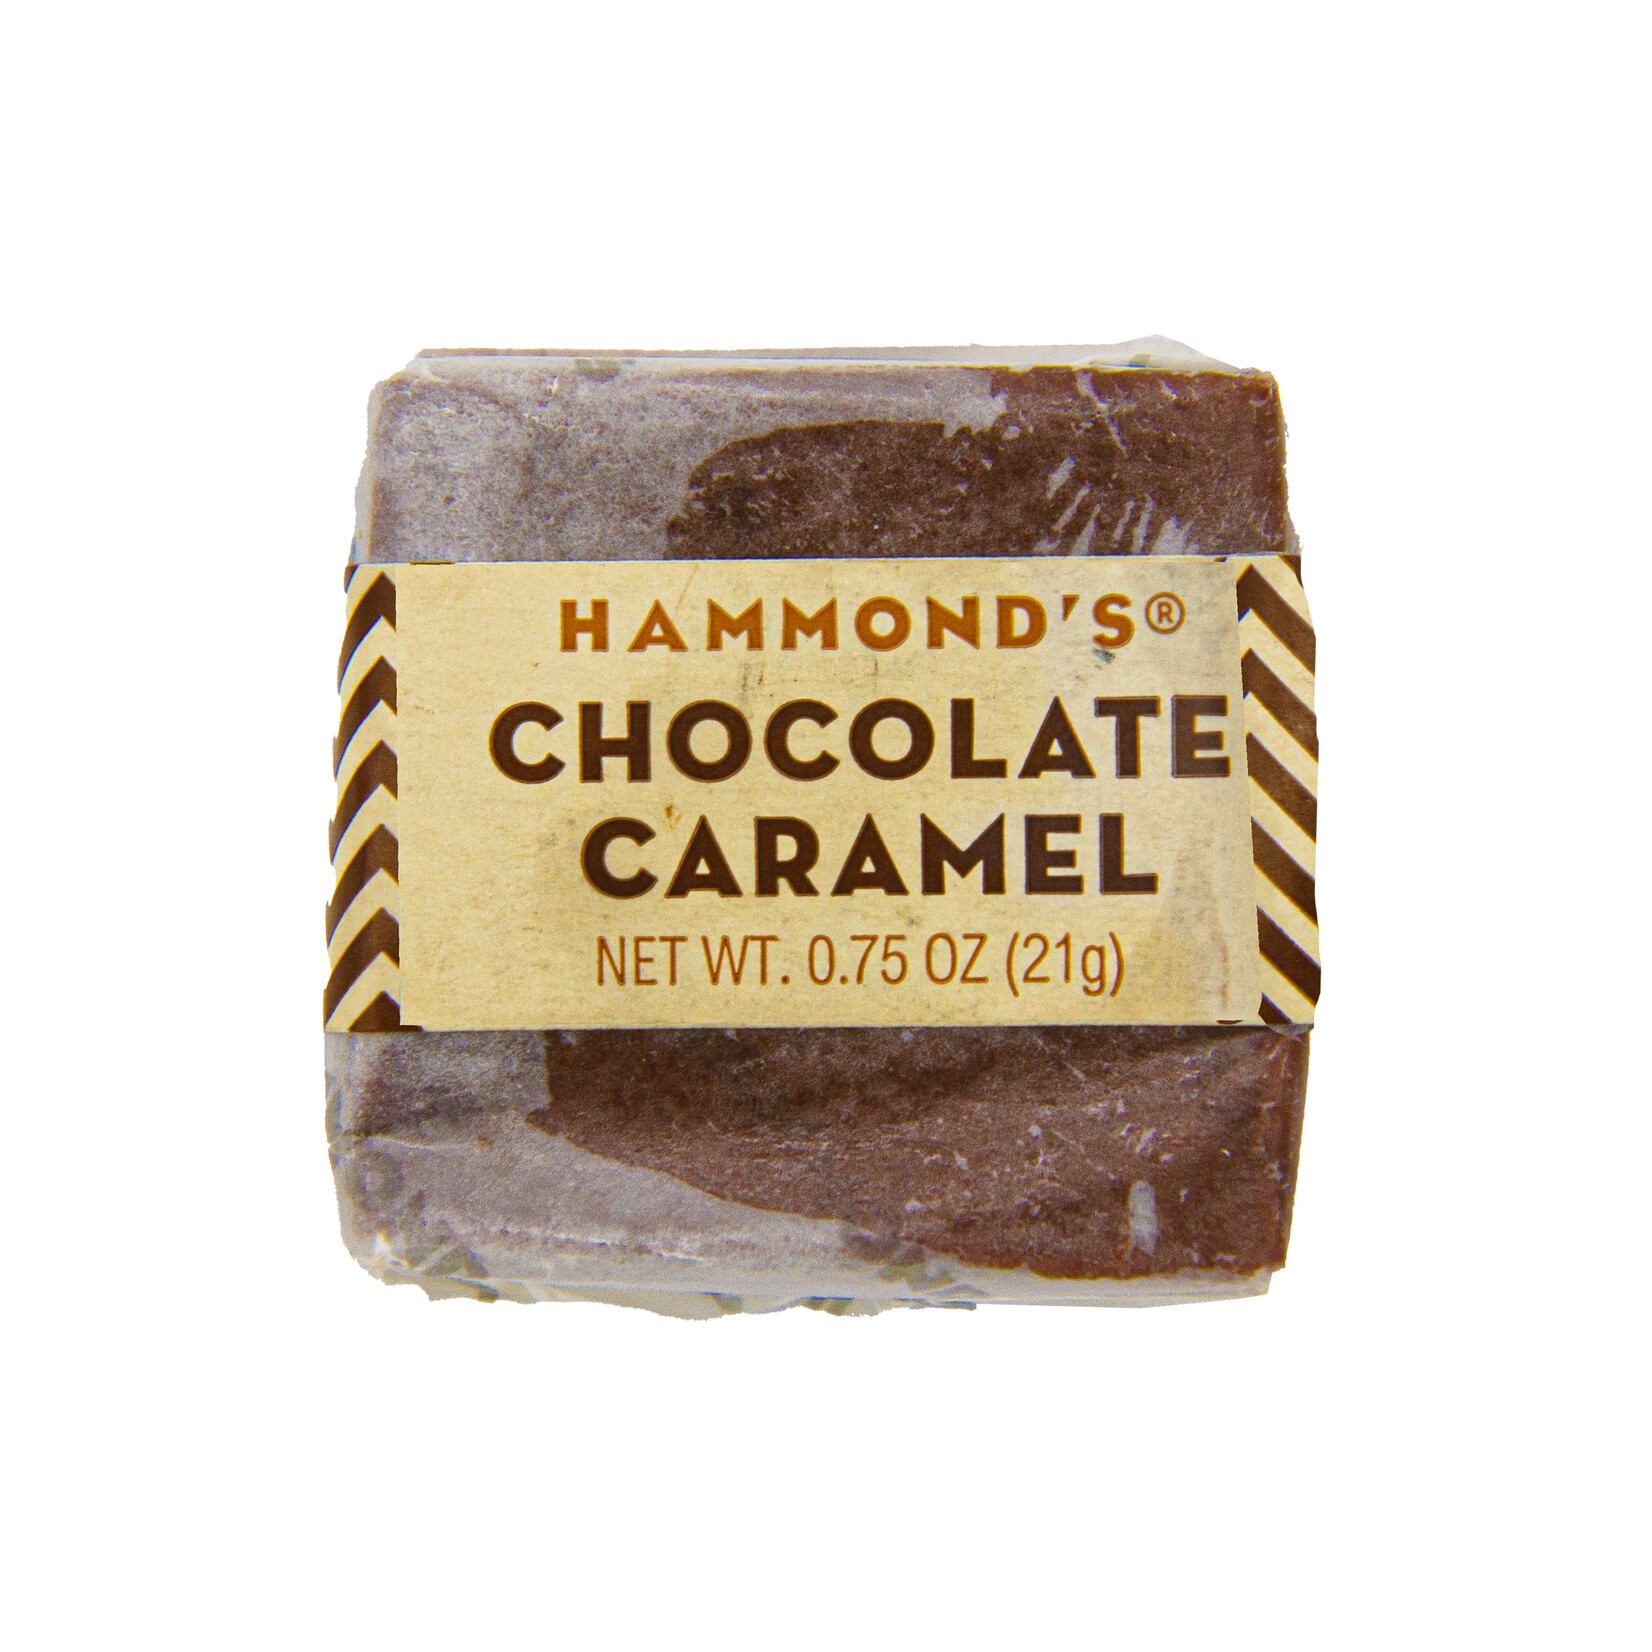 Hammond's Chocolate caramel 21g